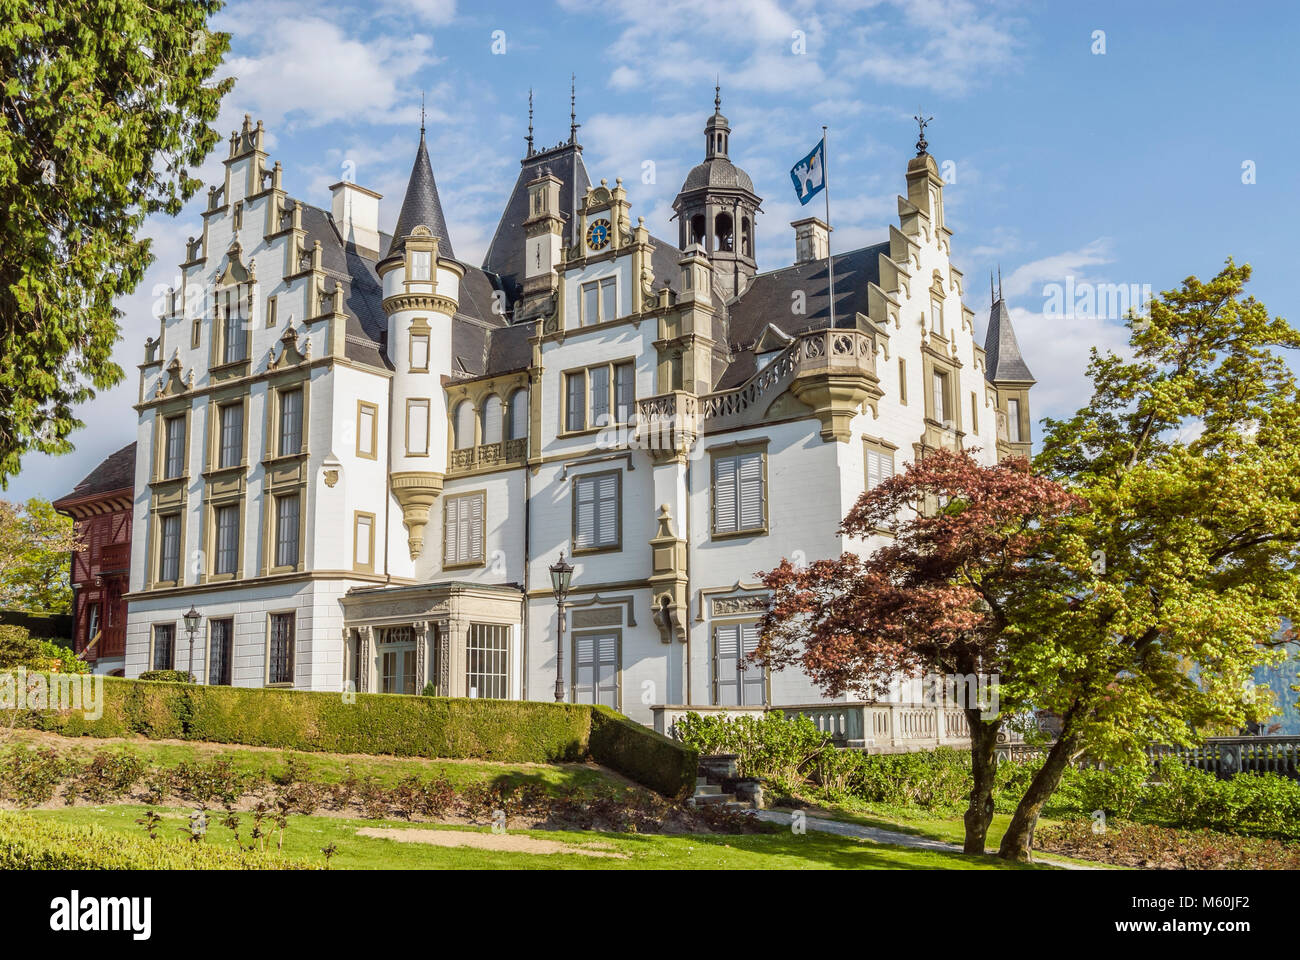 Schloss Meggen, a castle overlooking Lake Lucerne at the Meggenhorn near Lucerne, Switzerland Stock Photo